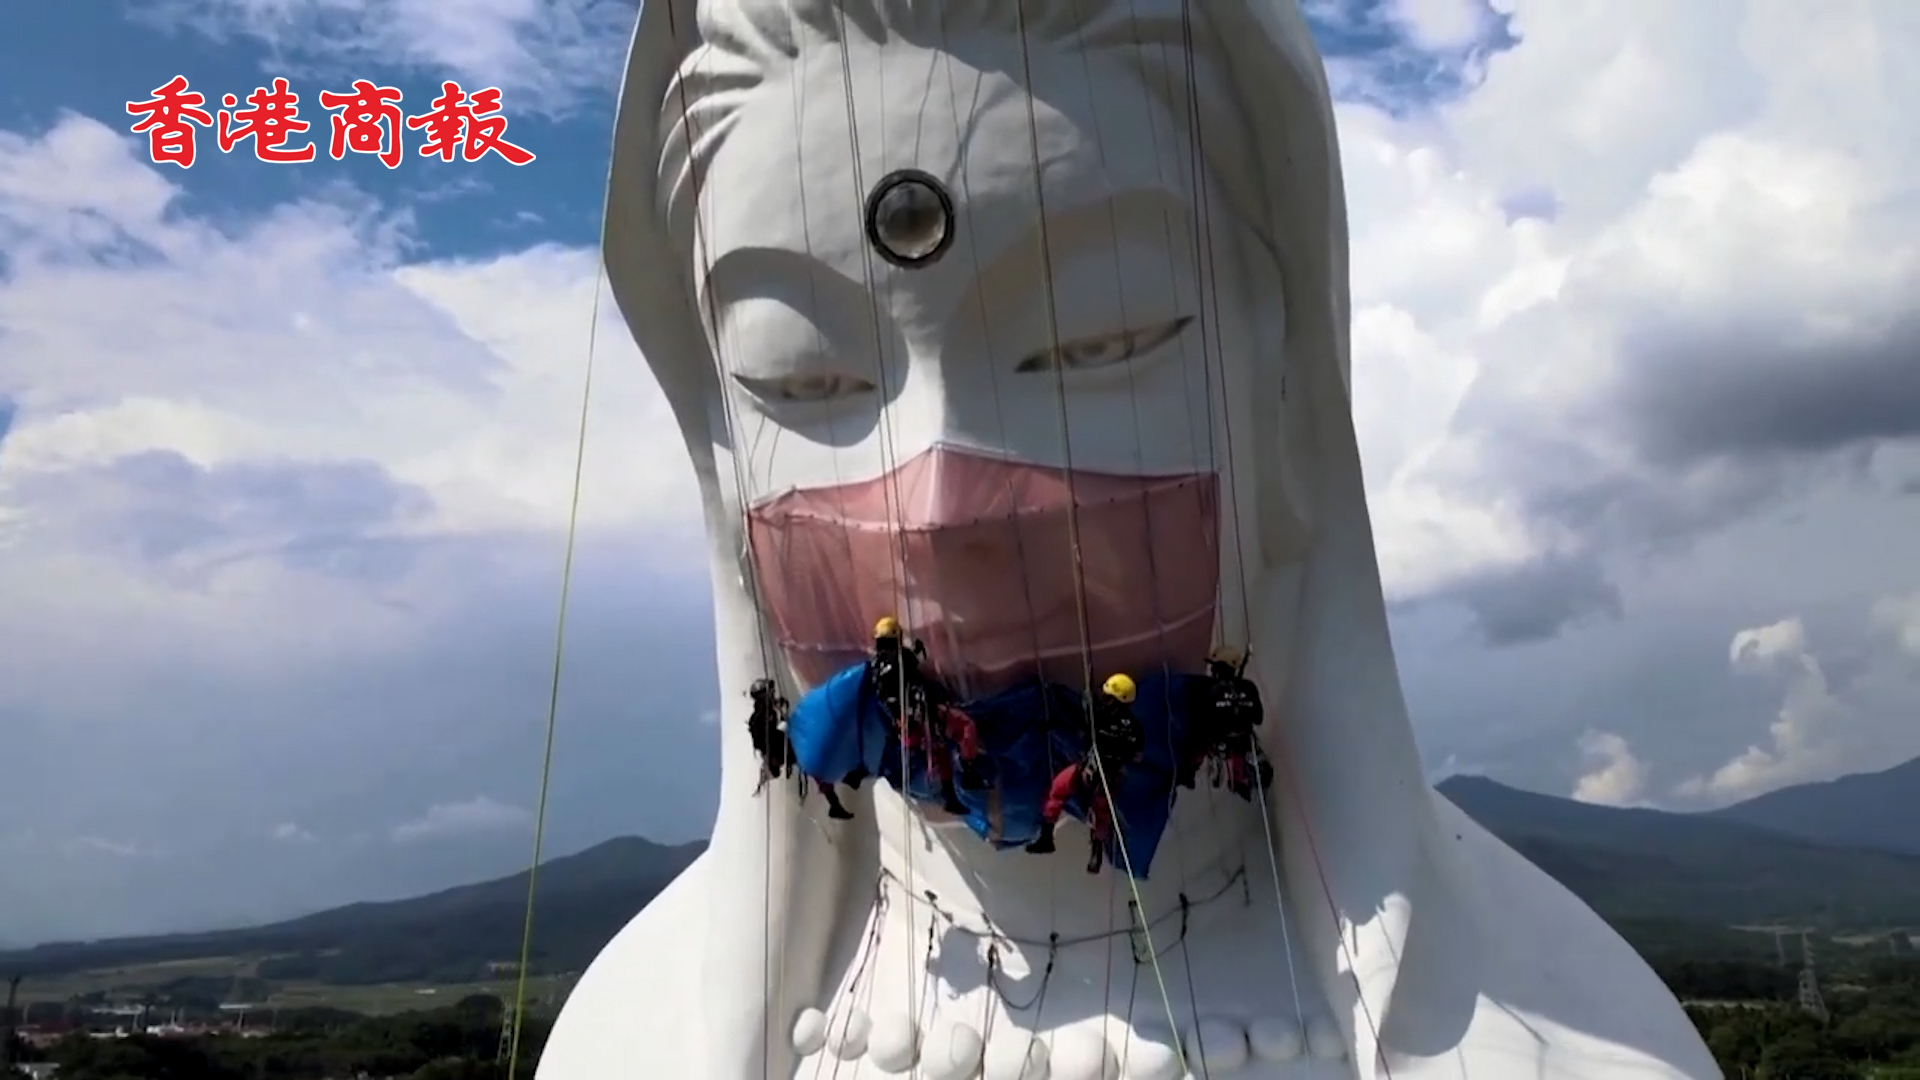 有片丨日本一佛像被戴上巨型口罩 以祈求疫情早日結束